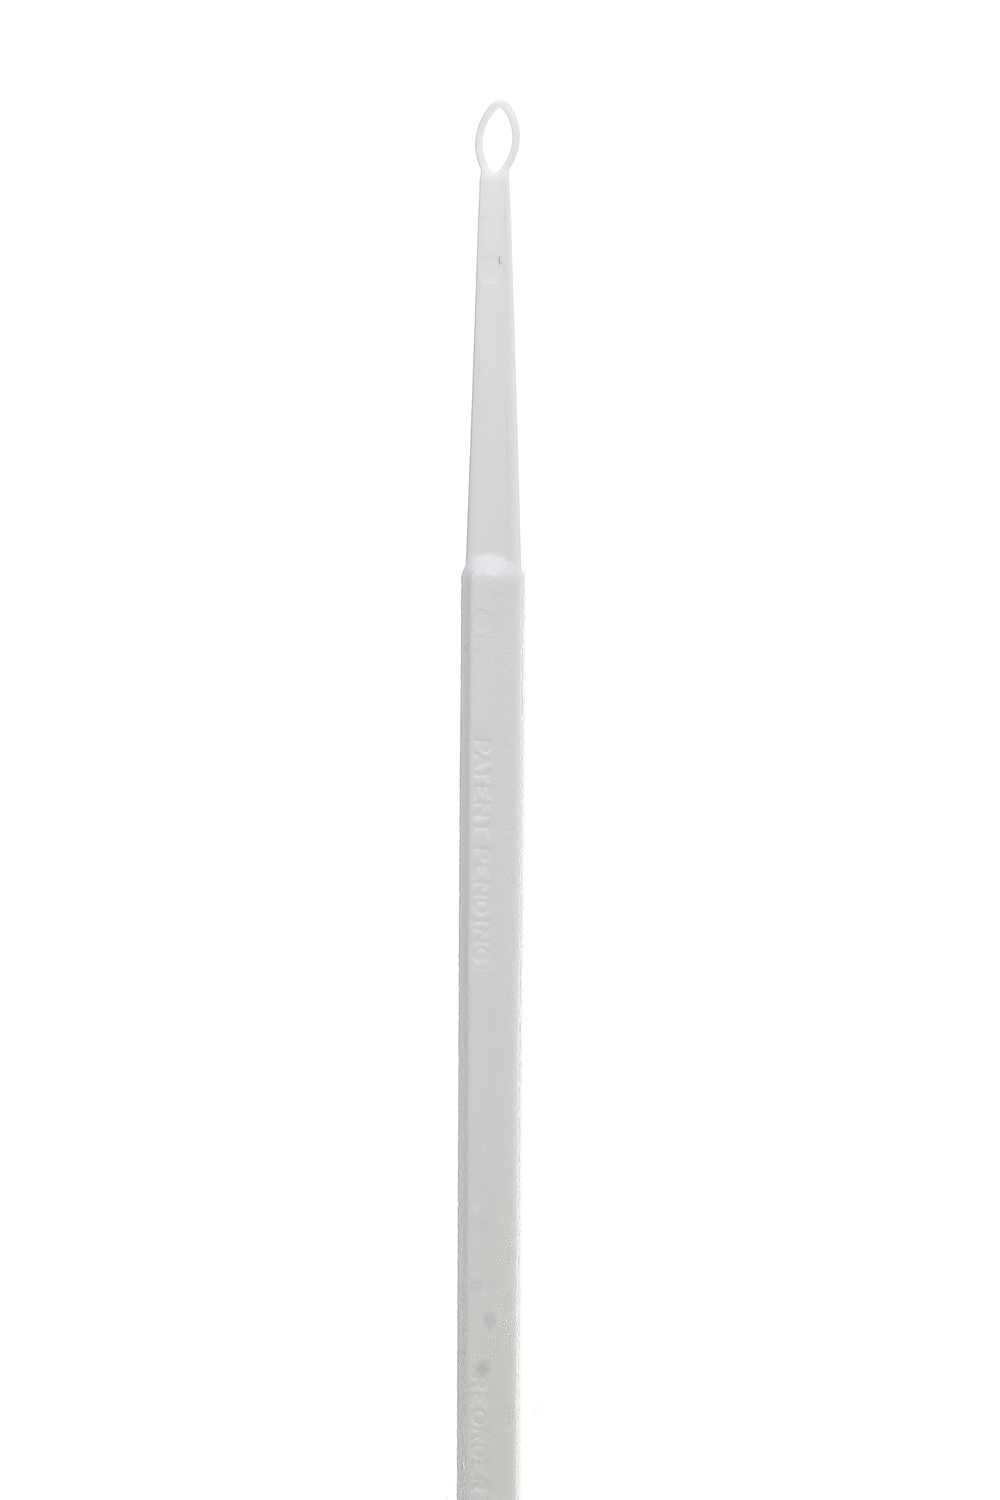 Bionix curettes auriculaires de sécurité FlexLoop - blanc (50 pcs)